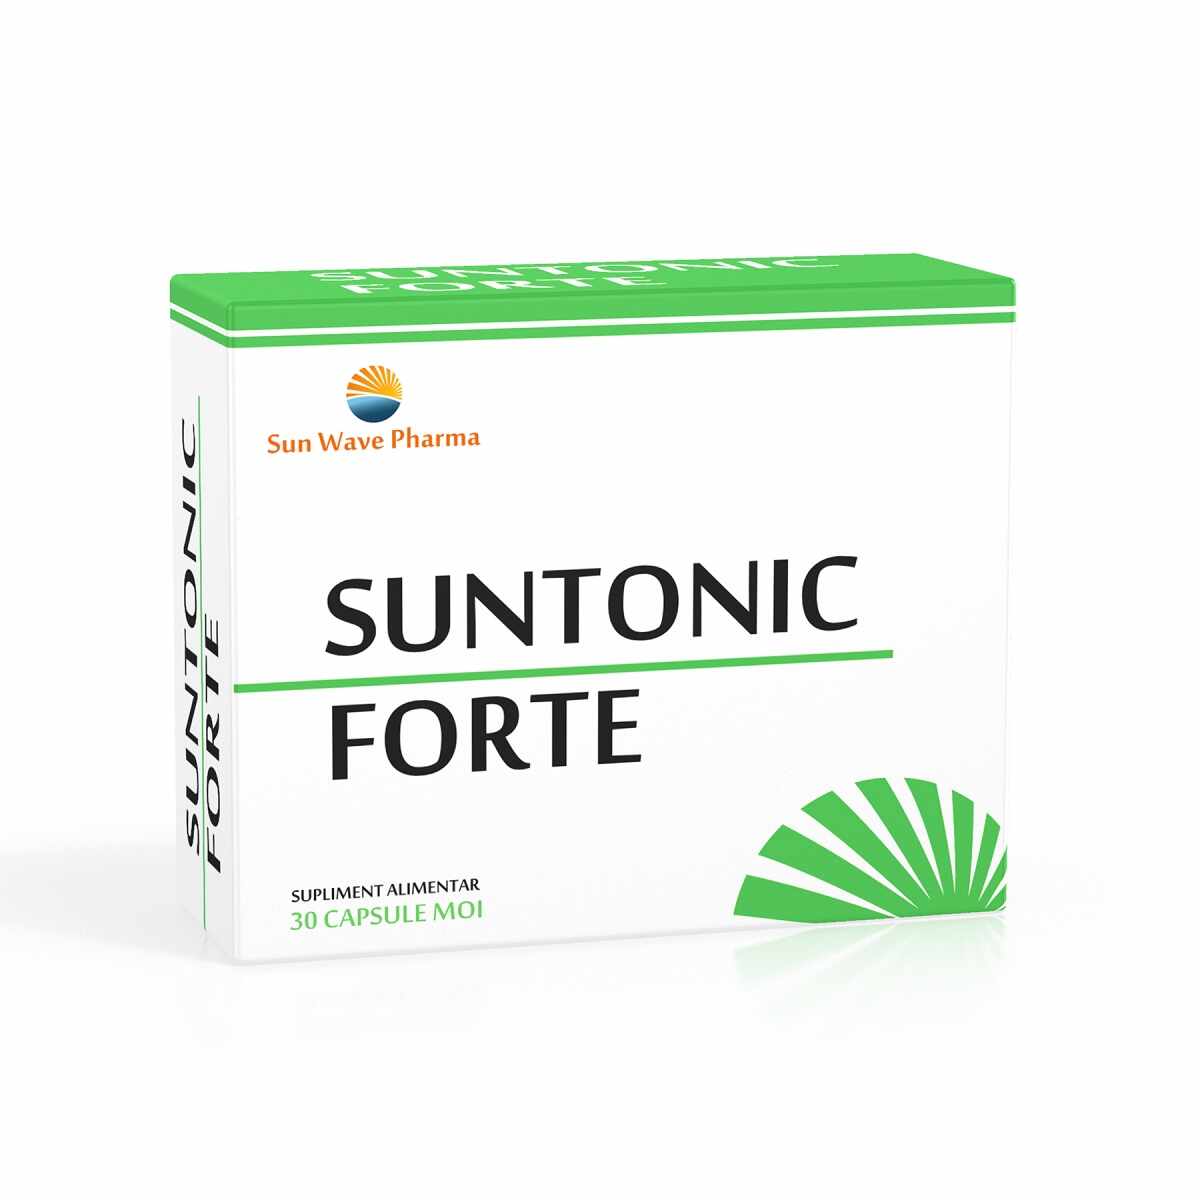 SUNTONIC FORTE X 30CPS SUNWAVE